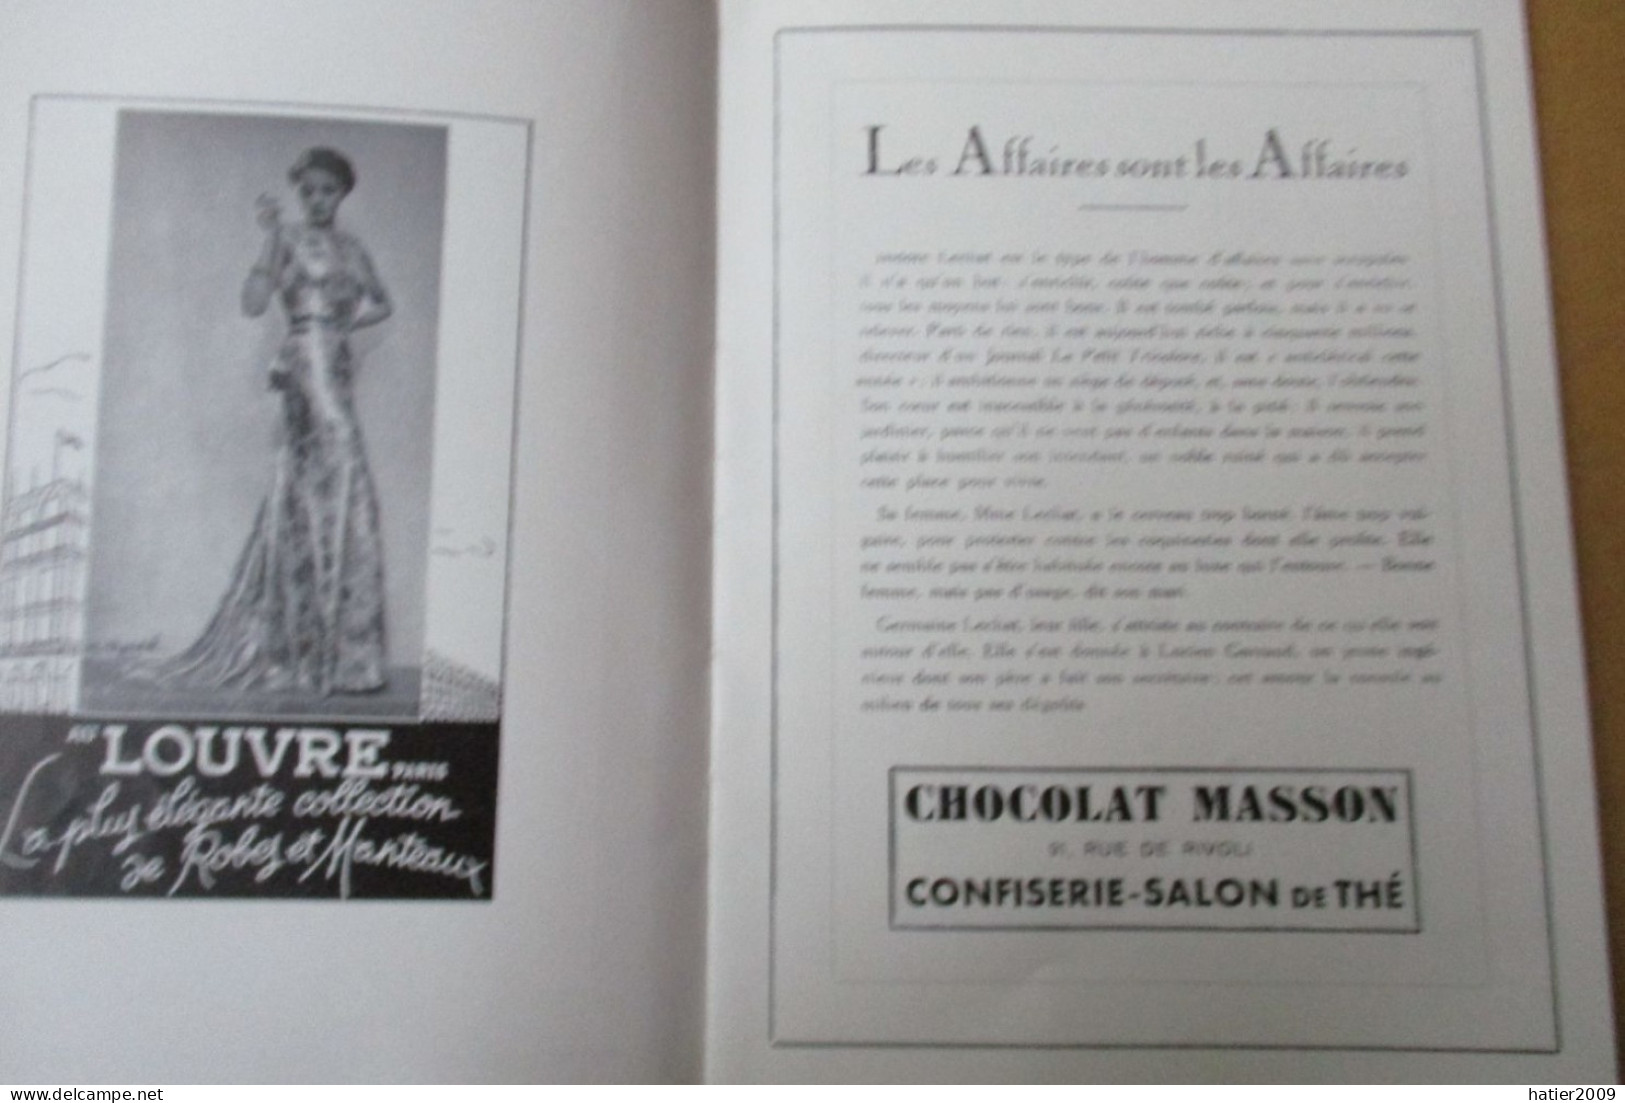 Programme COMEDIE FRANCAISE "Les affaires sont les affaires" - 7 Janvier 1937 - 32 pages joliment illustrées